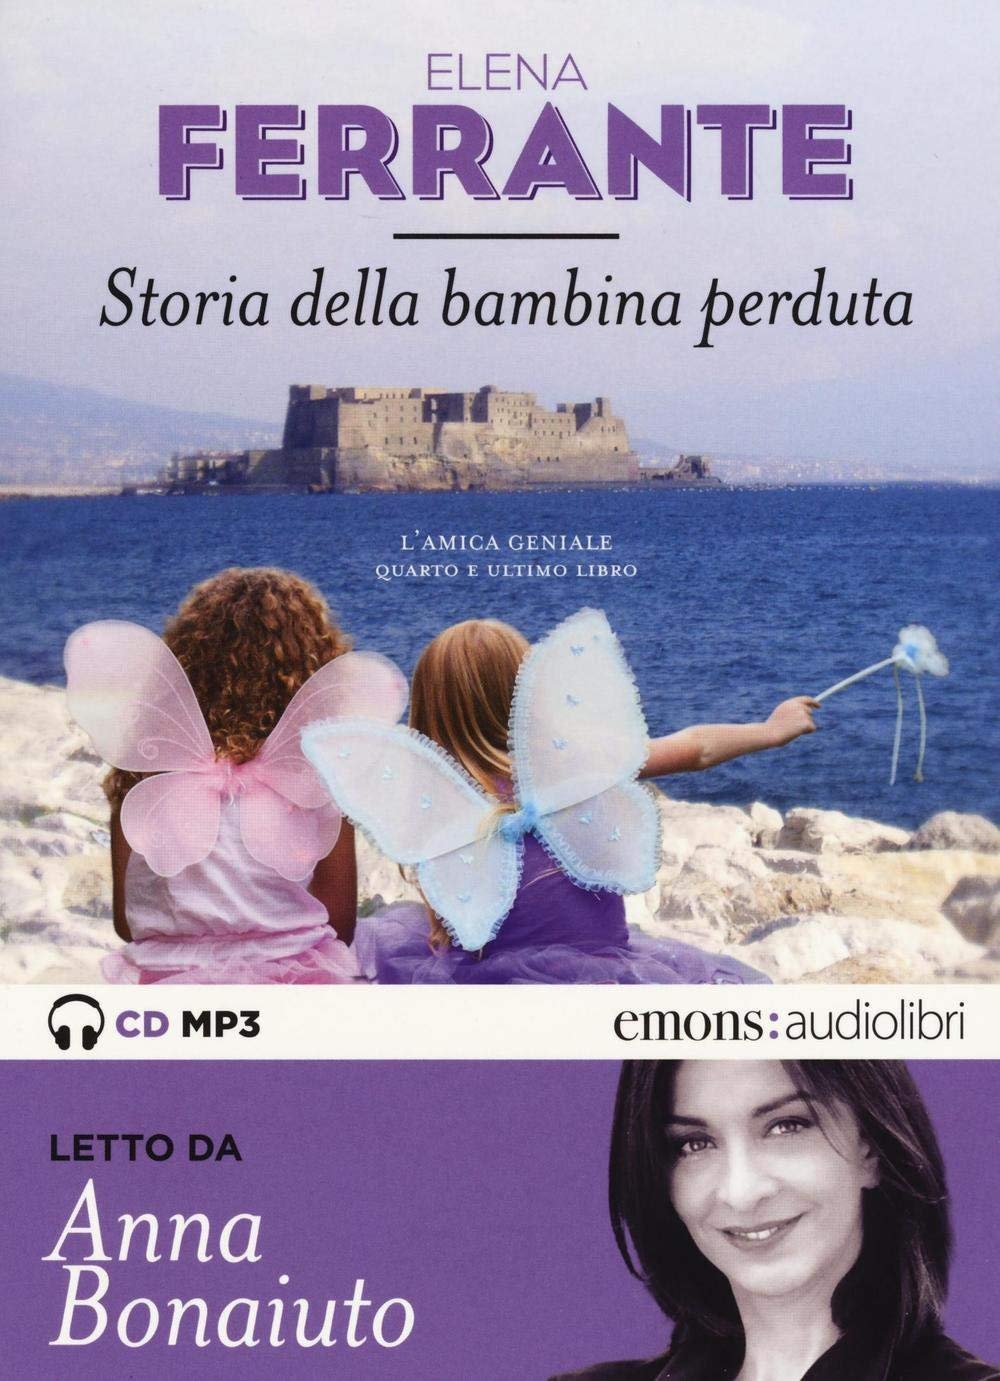 Audiolibro Elena Ferrante - Storia Della Bambina Perduta (Audiolibro) NUOVO SIGILLATO, EDIZIONE DEL 12/05/2016 SUBITO DISPONIBILE